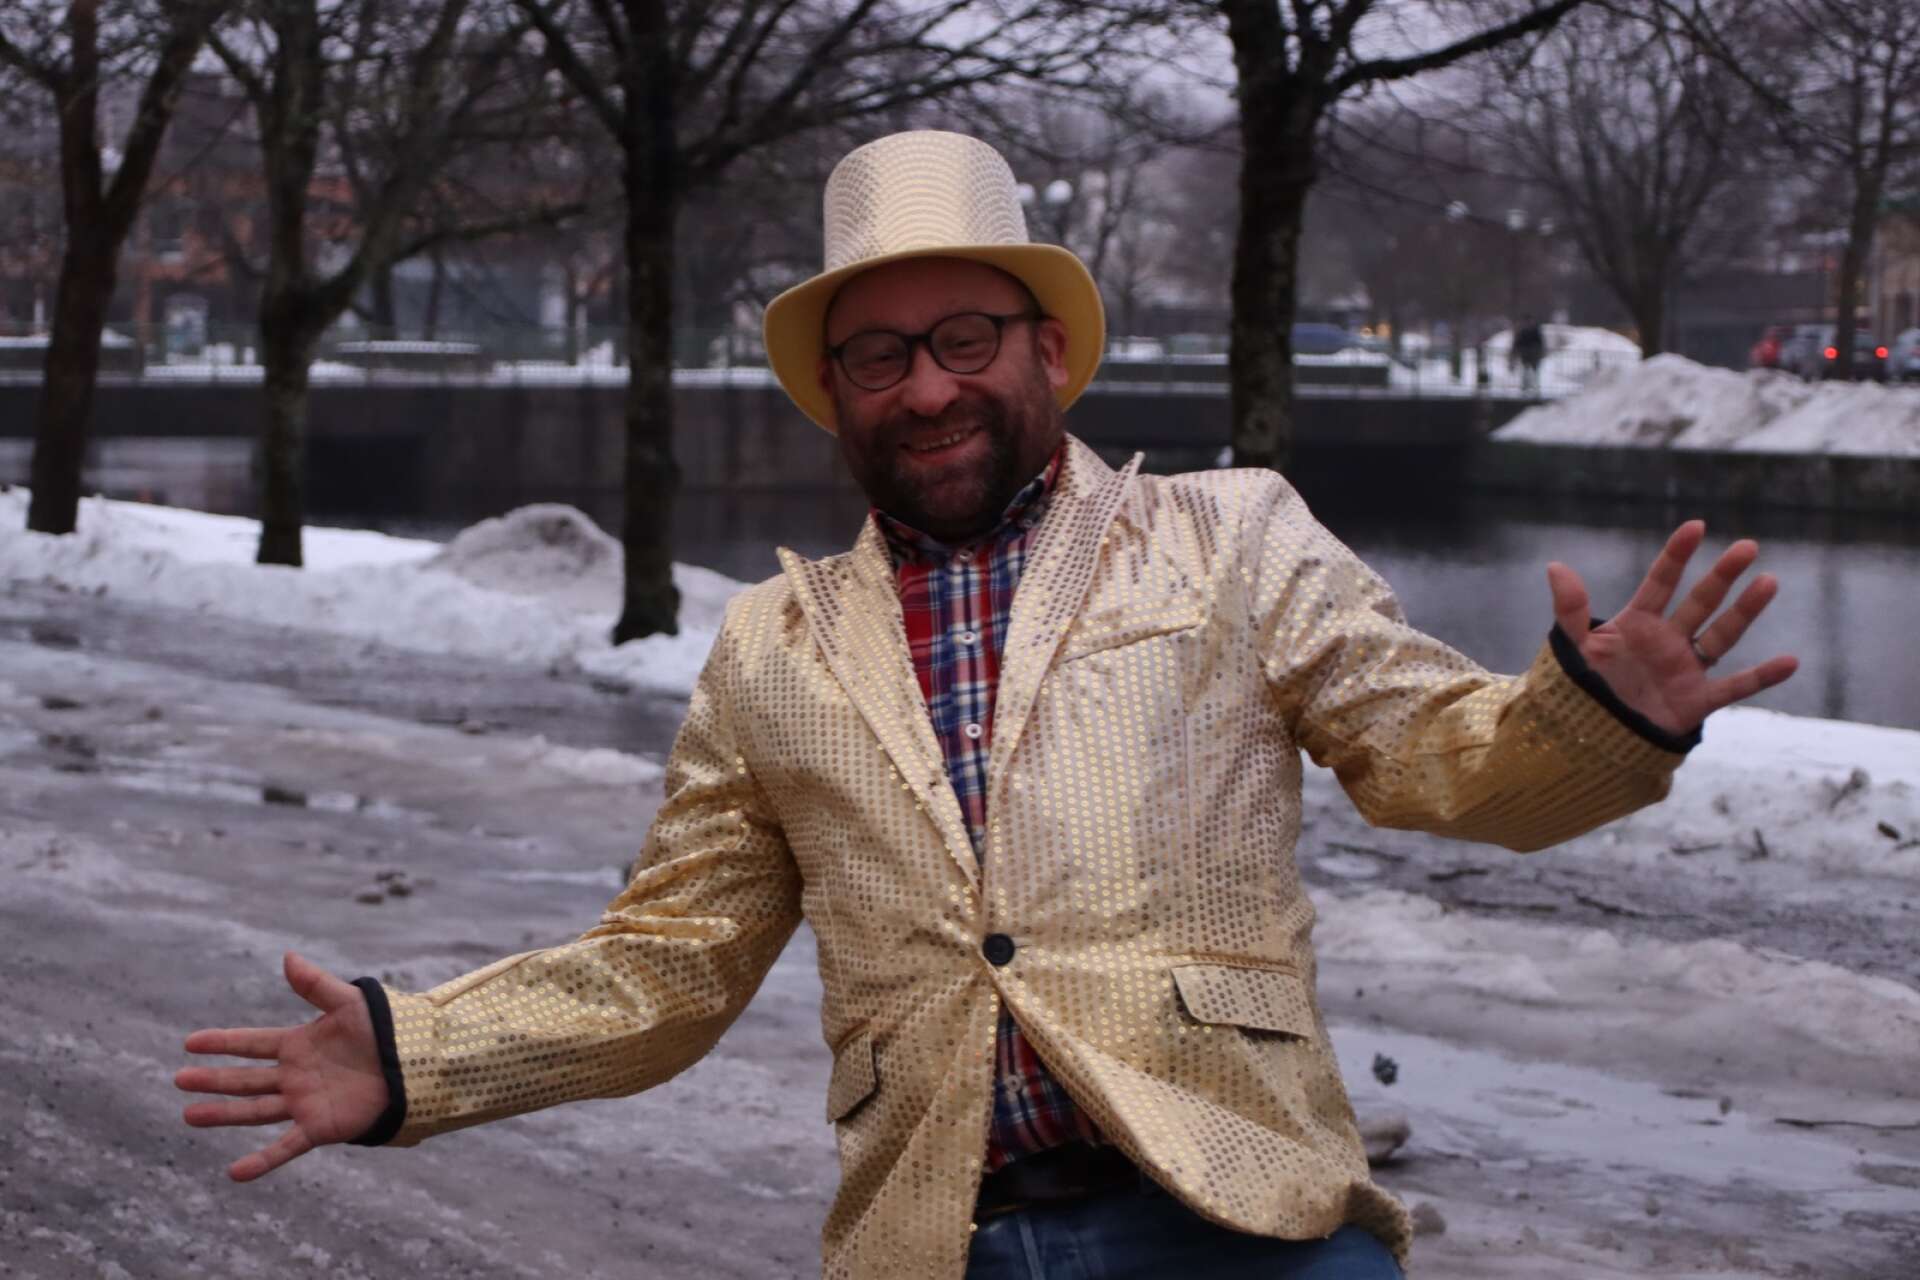 En grå februaridag behöver lite guld och glans - när Mellofesten rullar igång drar FT:s chefredaktör Filip Kowalski på sig den guldiga paljettkavajen med matchande hatt. 